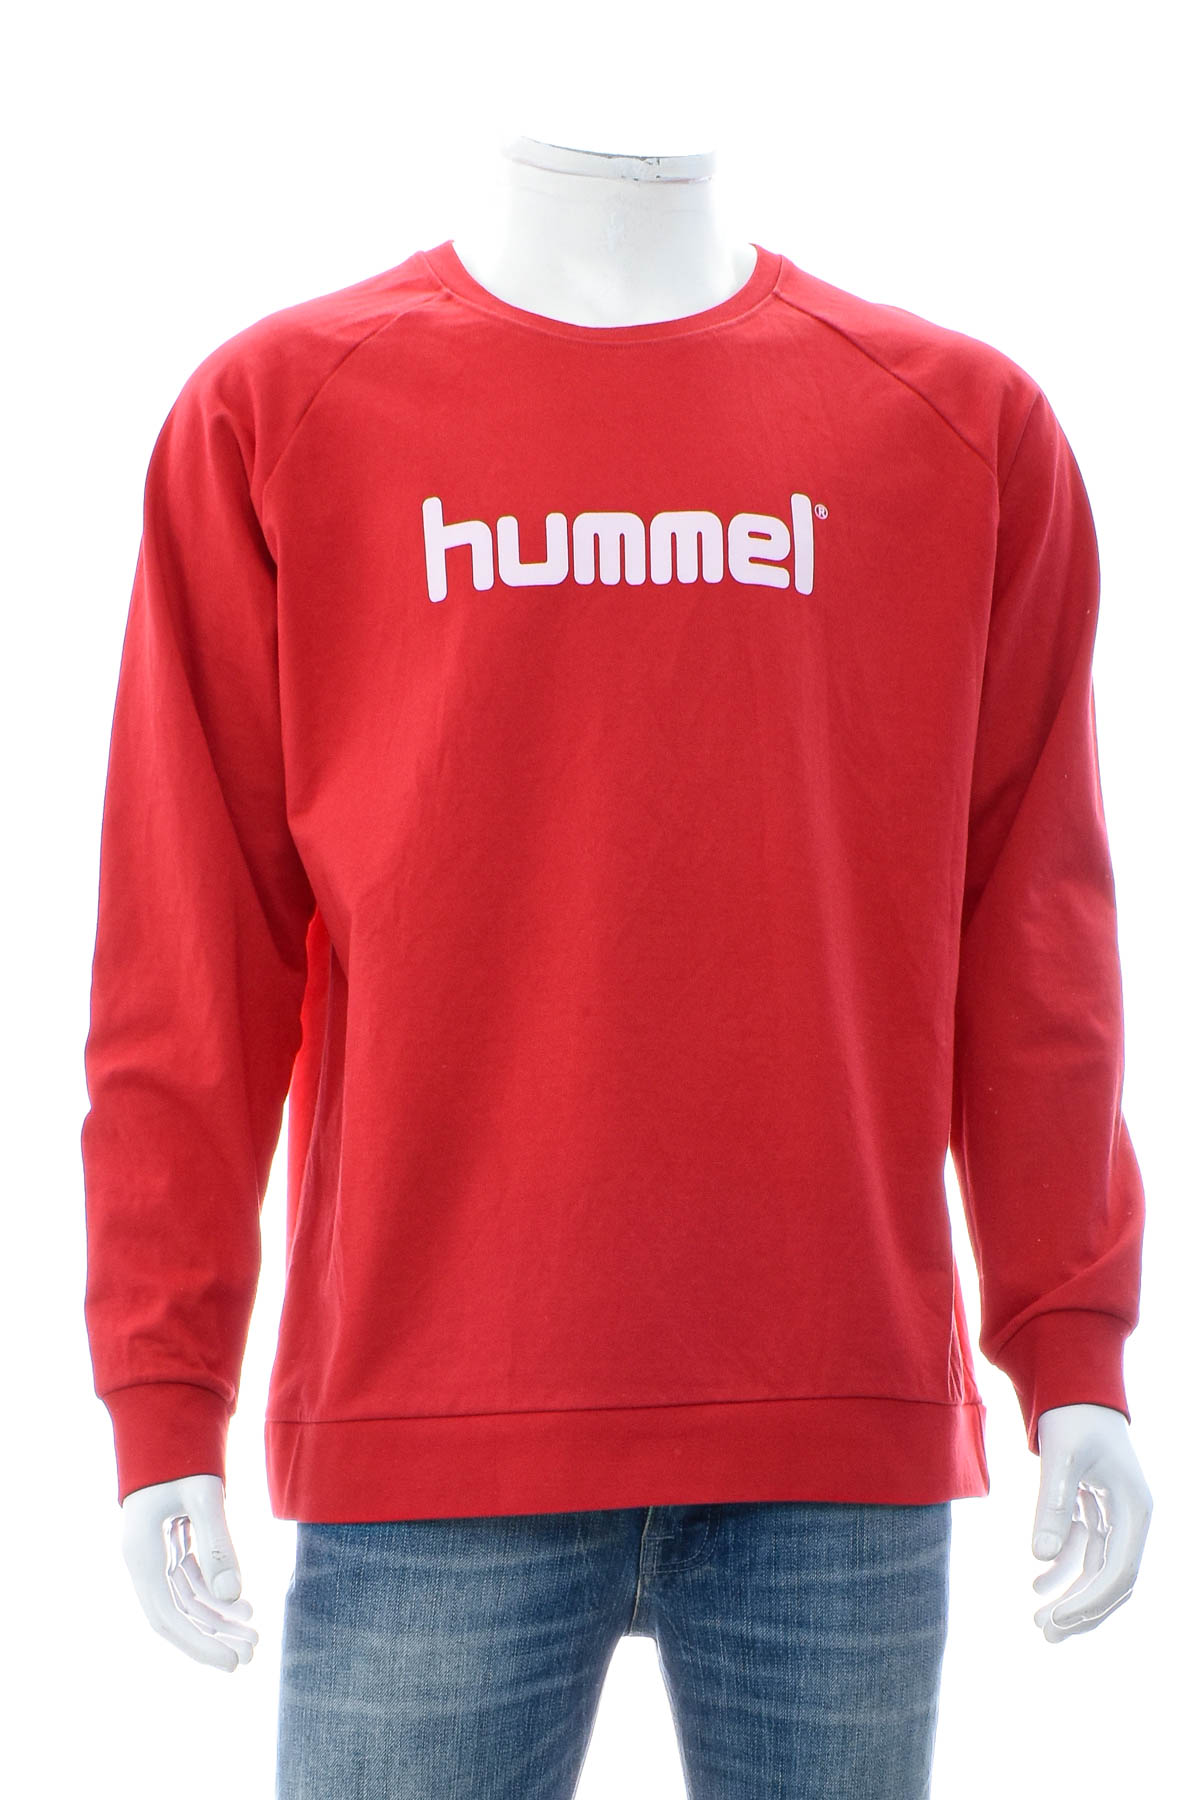 Ανδρική μπλούζα - Hummel - 0